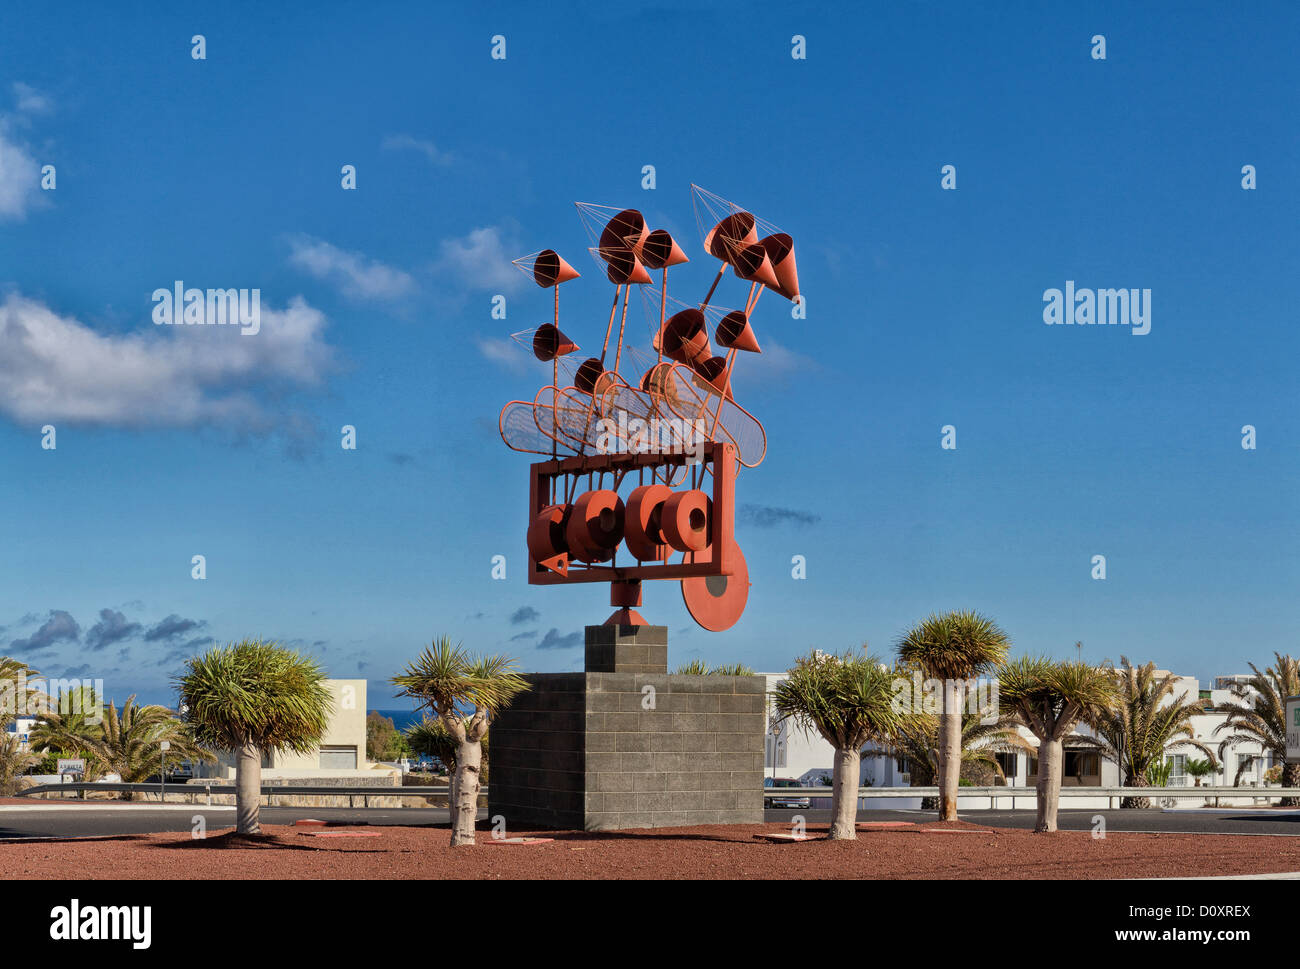 Spain, Lanzarote, Arrieta, Juguetes del Viento, wind game, construction, summer, Canary Islands, Stock Photo